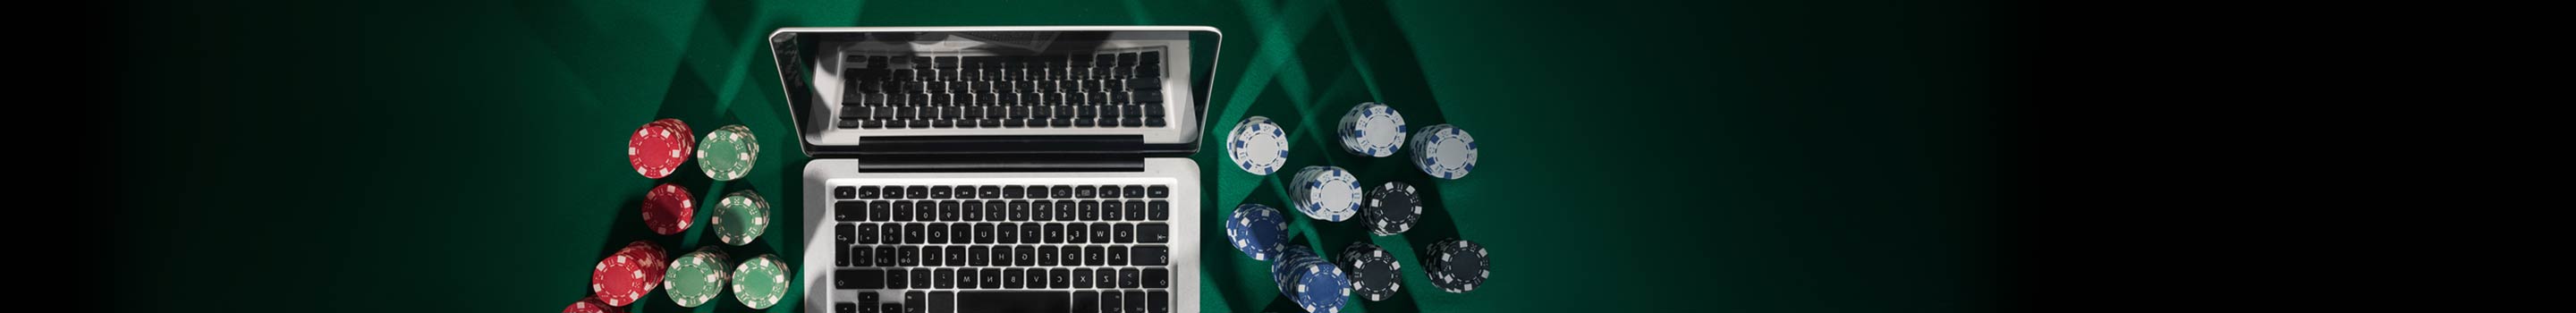 Poker online za darmo